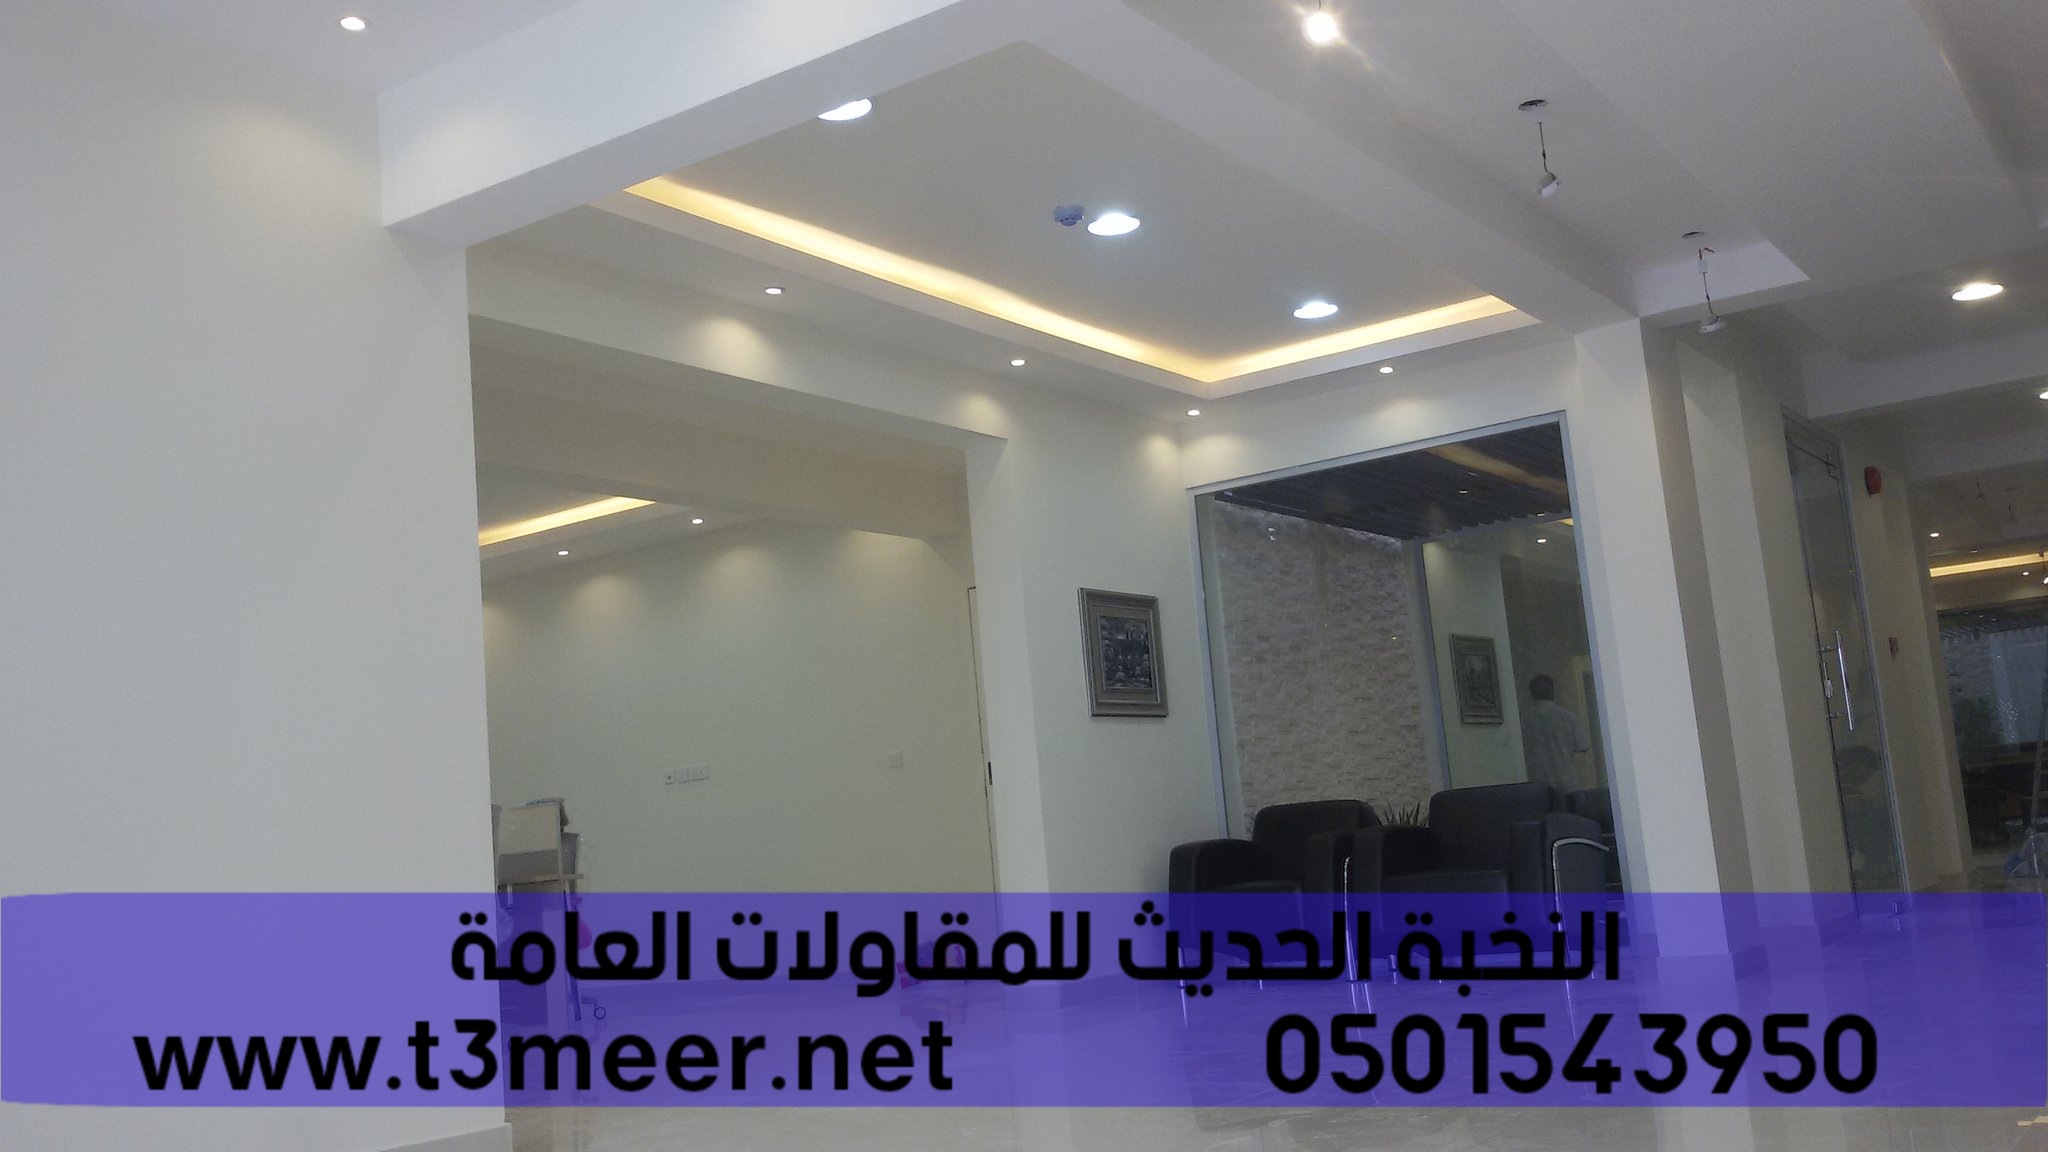 تشطيب منازل و بناء عظم في الرياض , 0501543950 P_24313gyae5